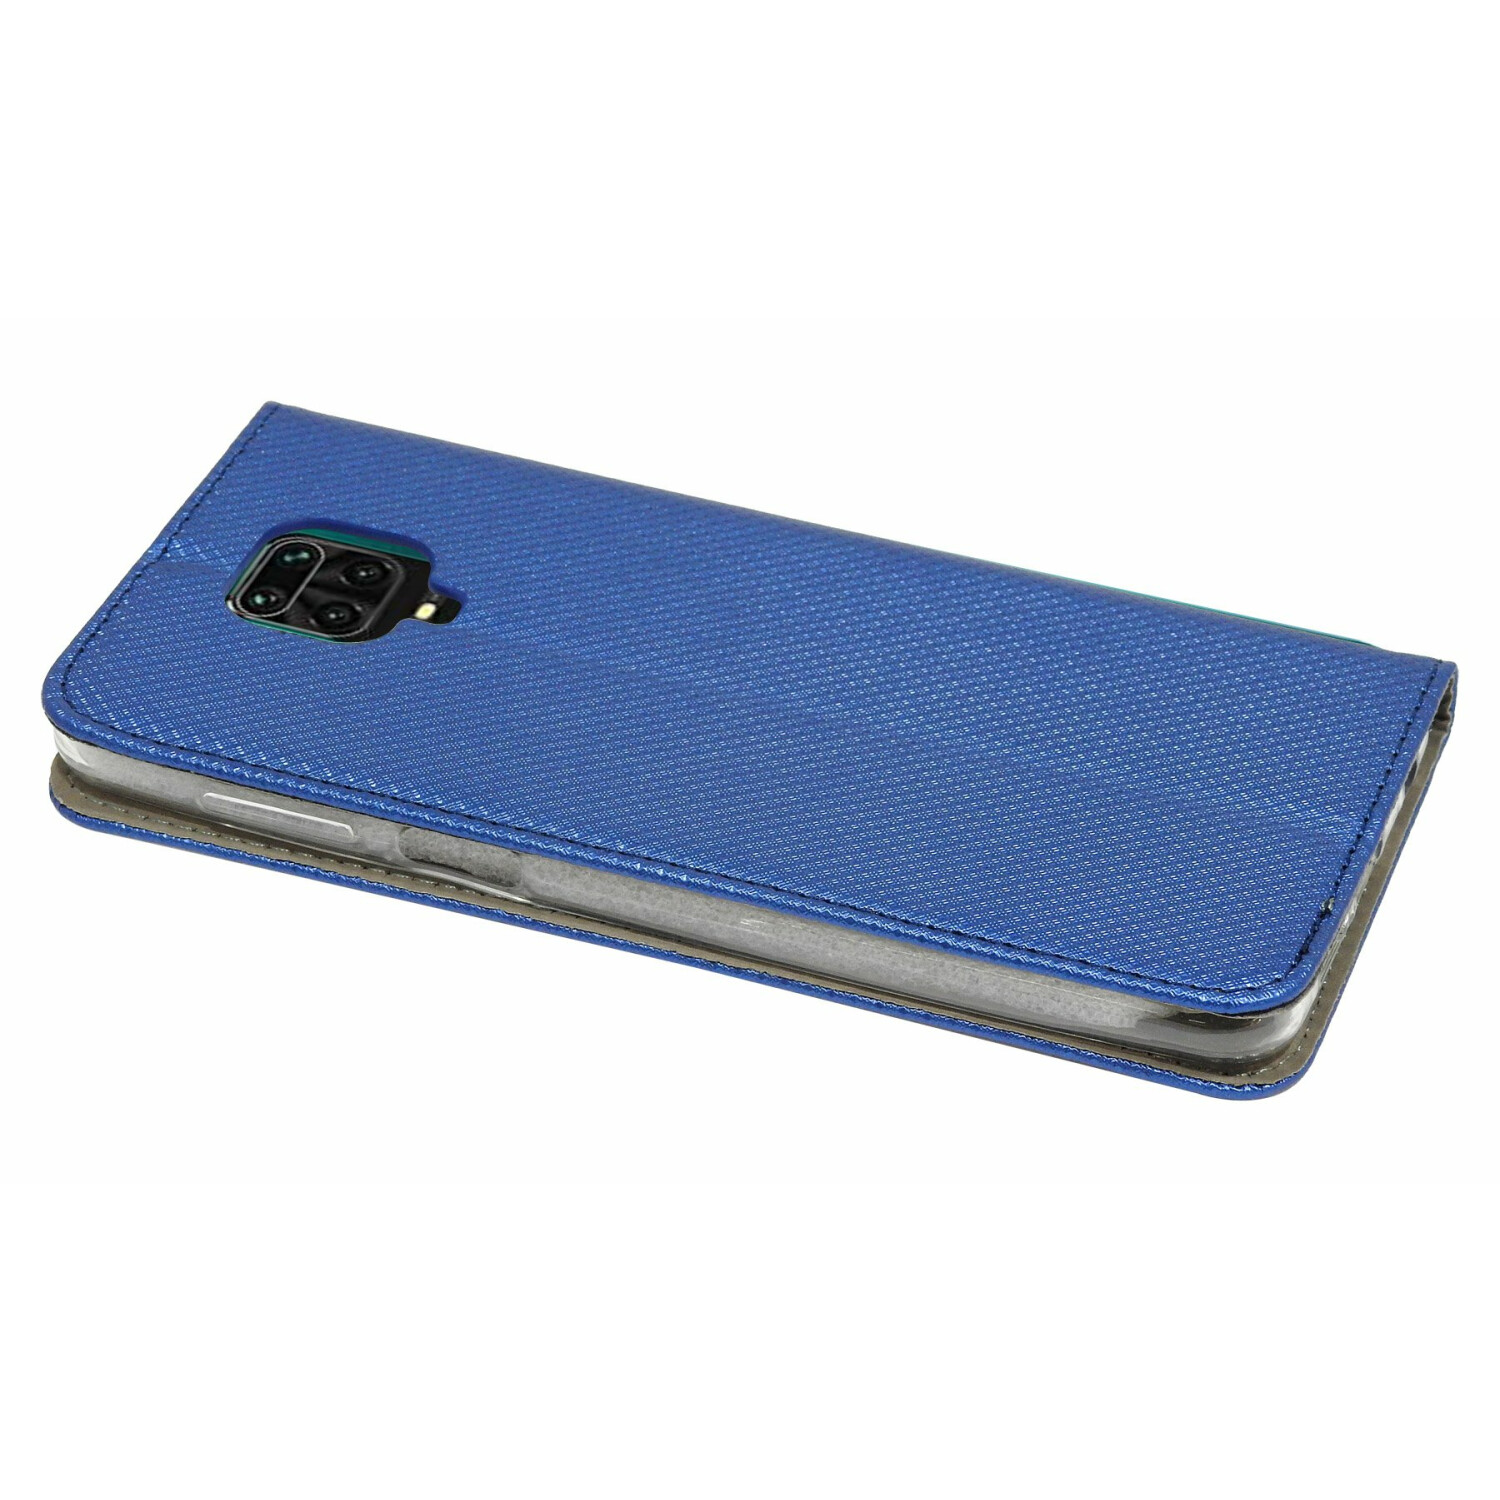 COFI 9 Blau Bookcover, Xiaomi, Smart Redmi Hülle, Pro Note Max,